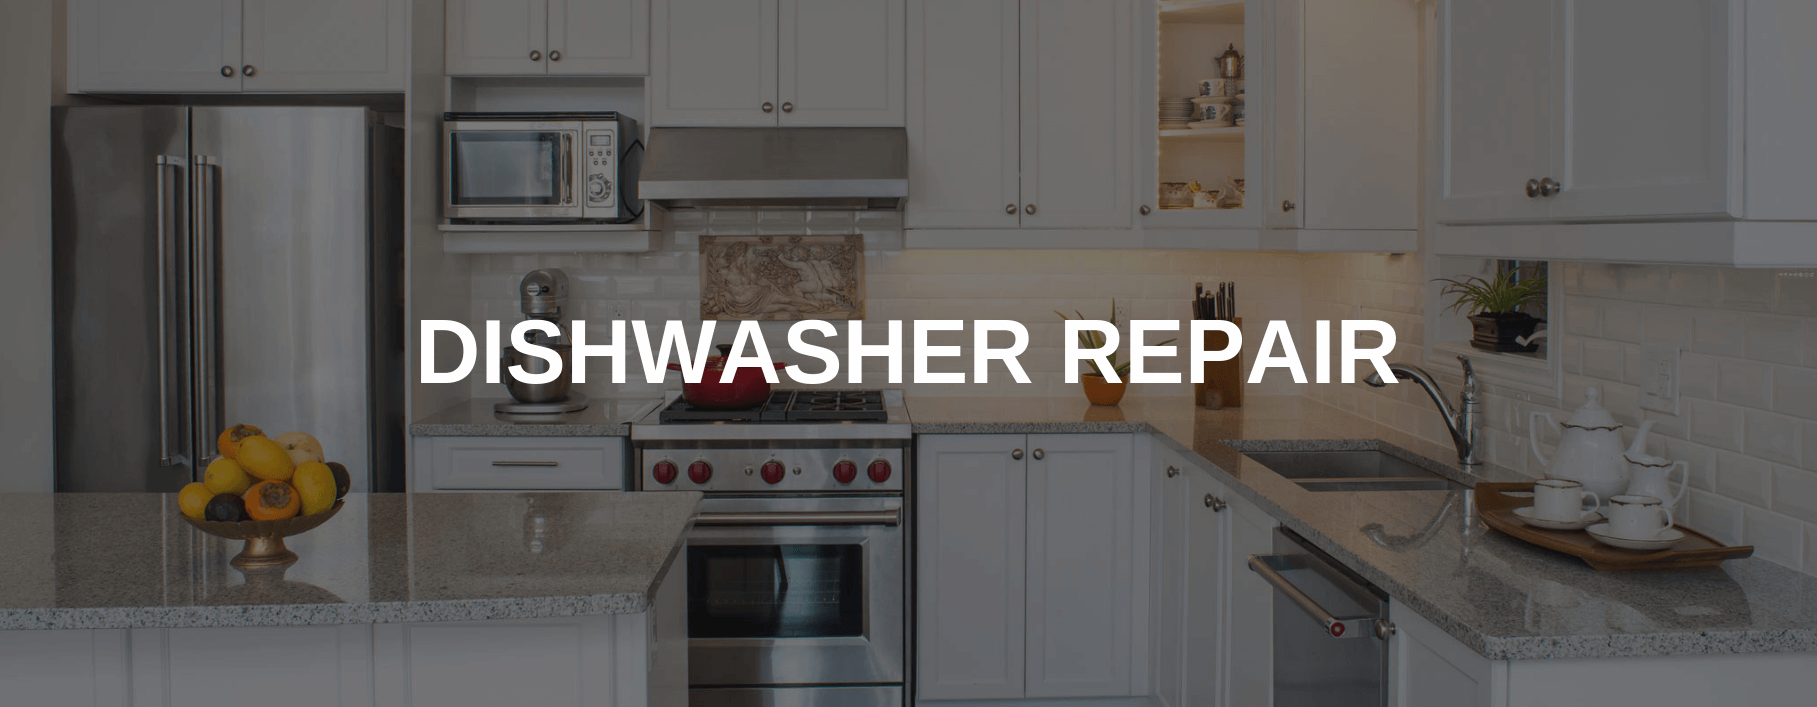 dishwasher repair rockville